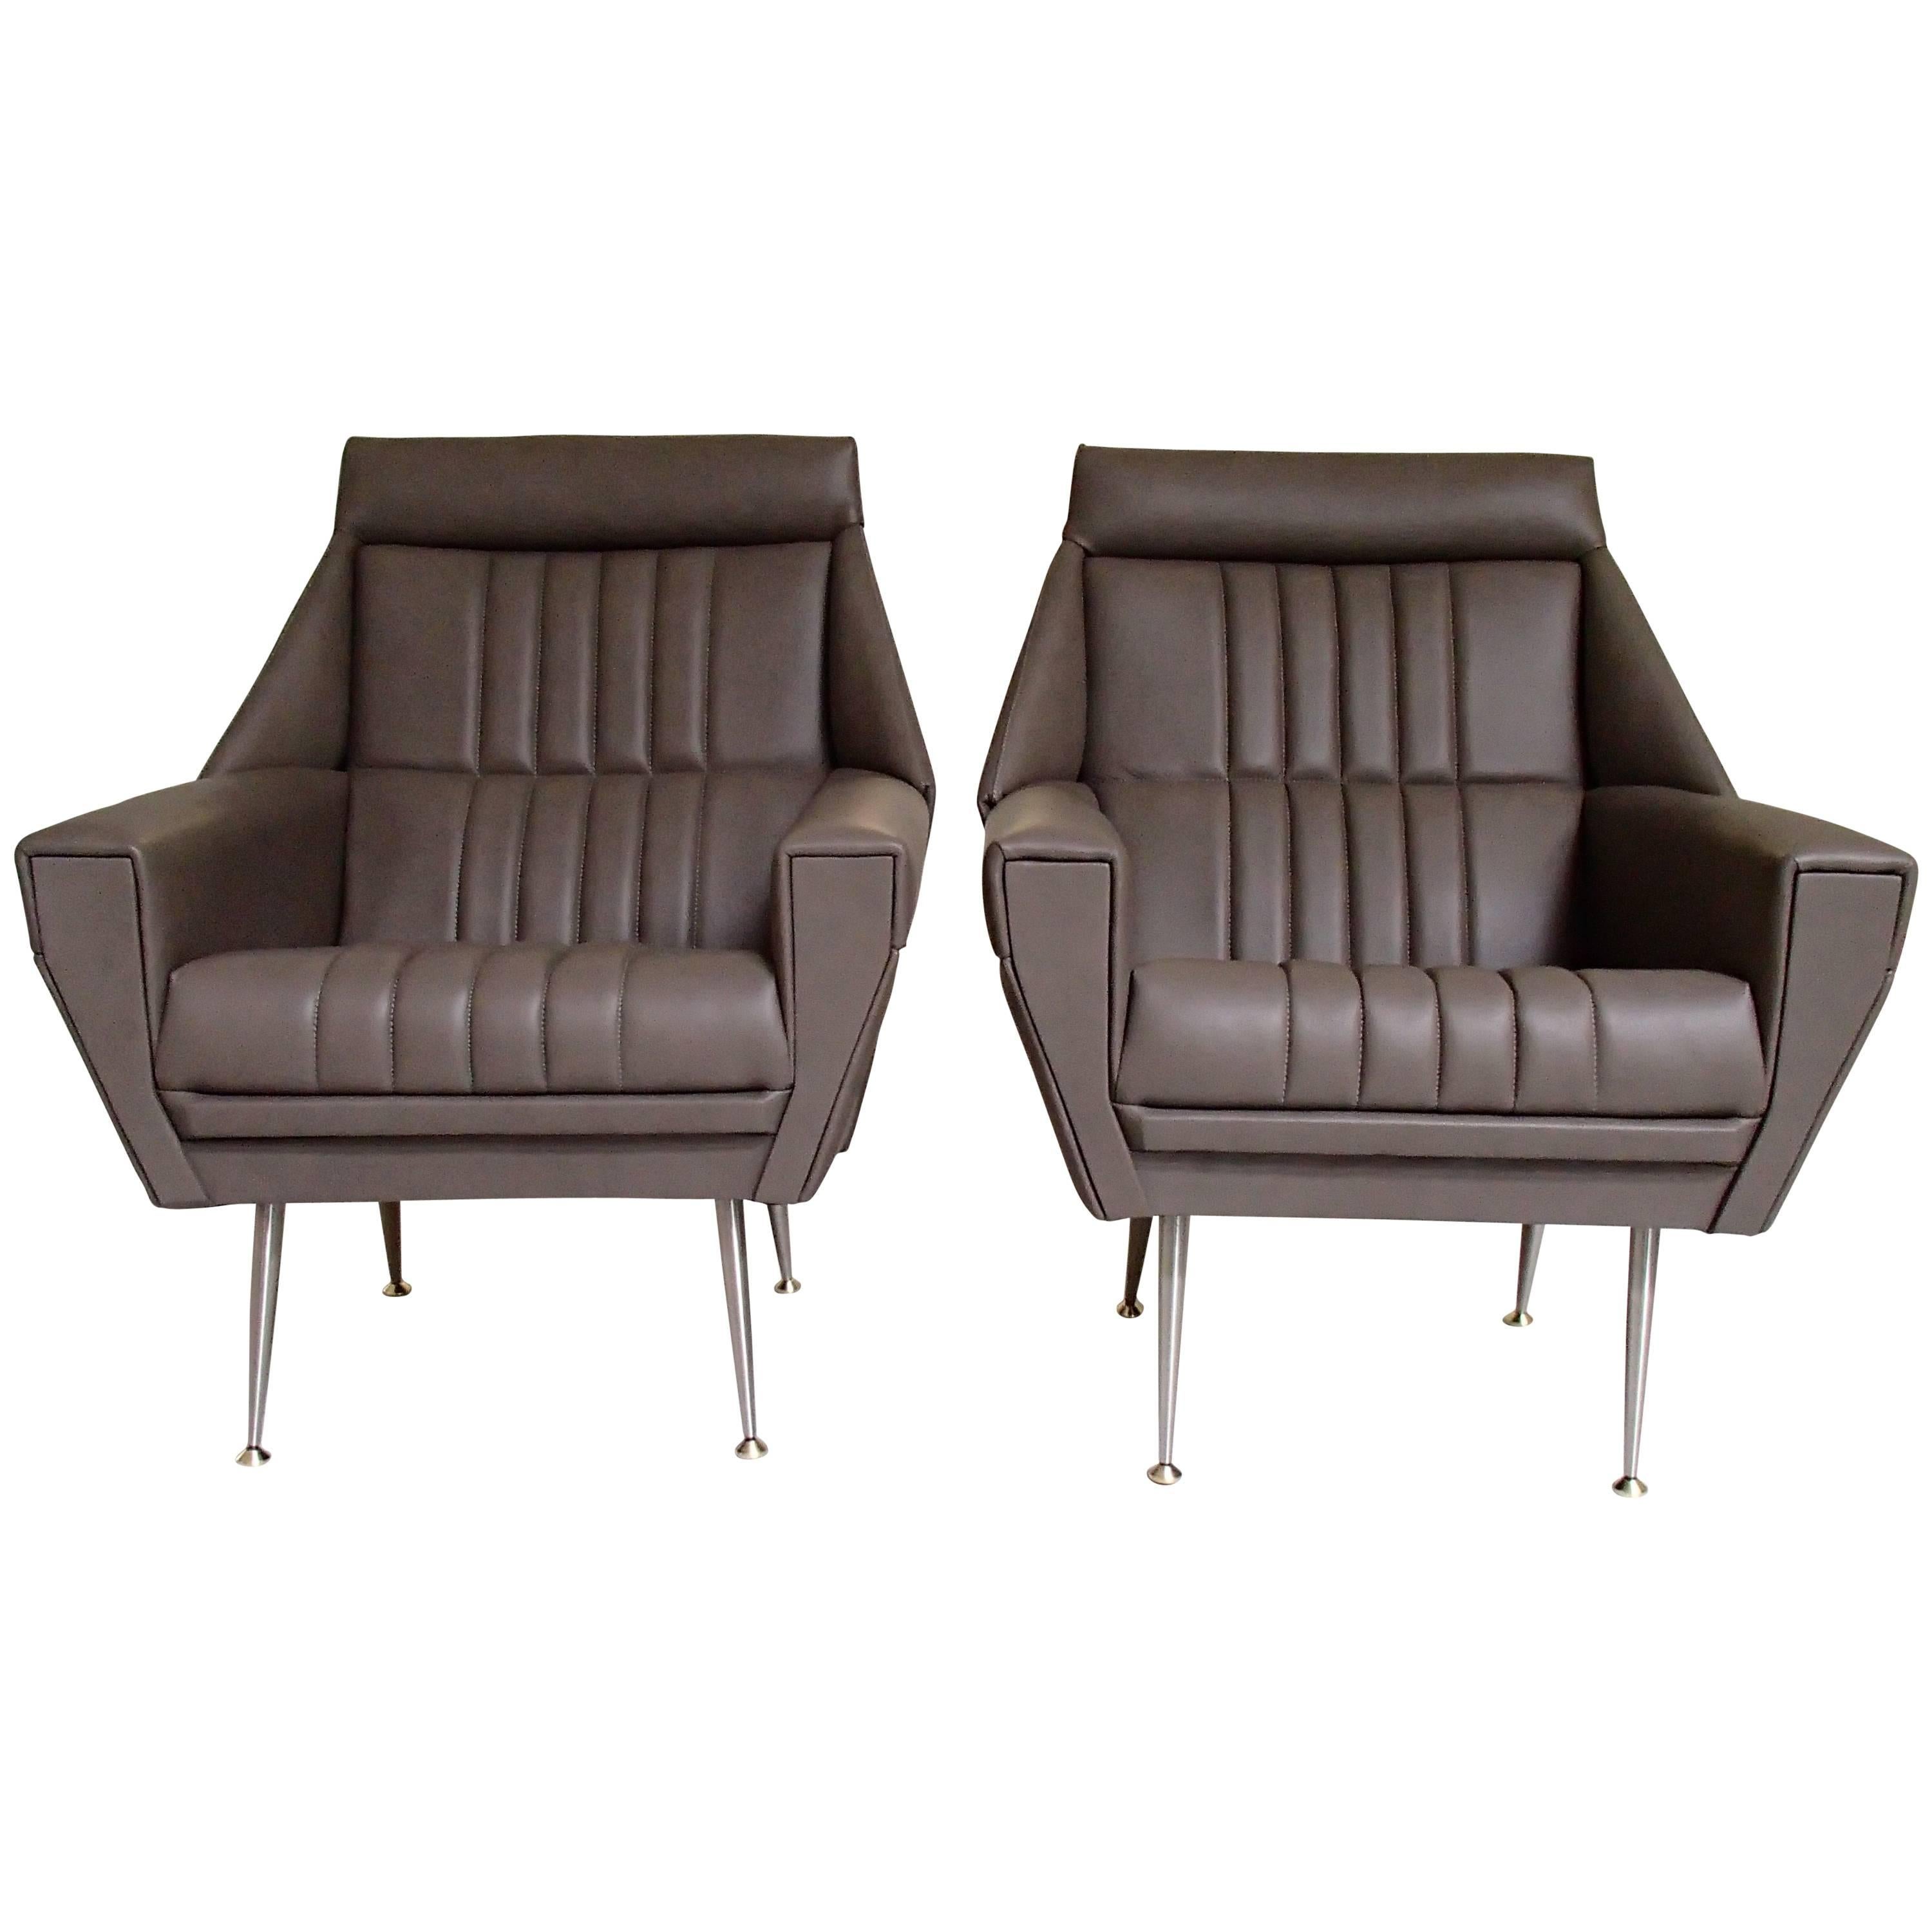 Paire de fauteuils en cuir gris verdâtre de style mi-siècle moderne